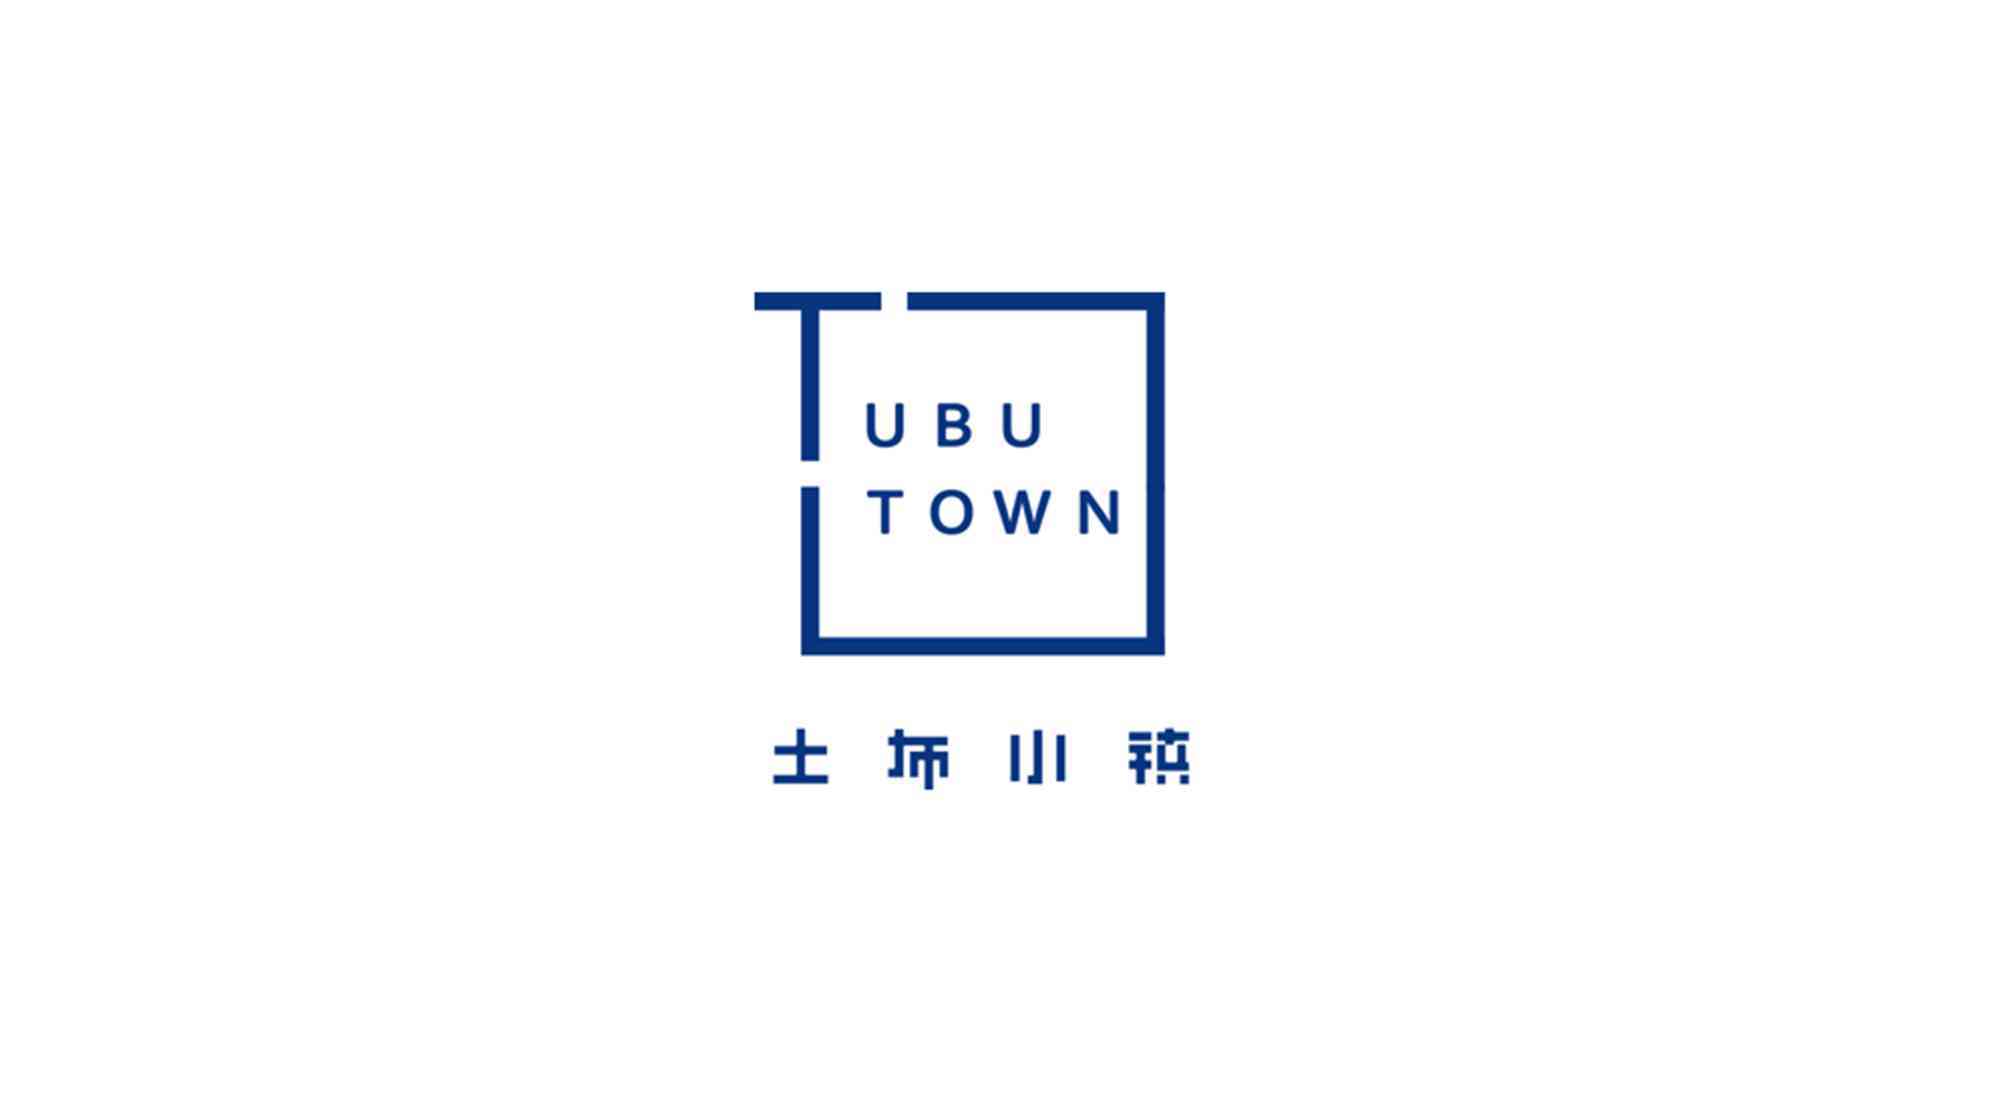 贞丰县土布小镇旅游景点logo设计图片素材